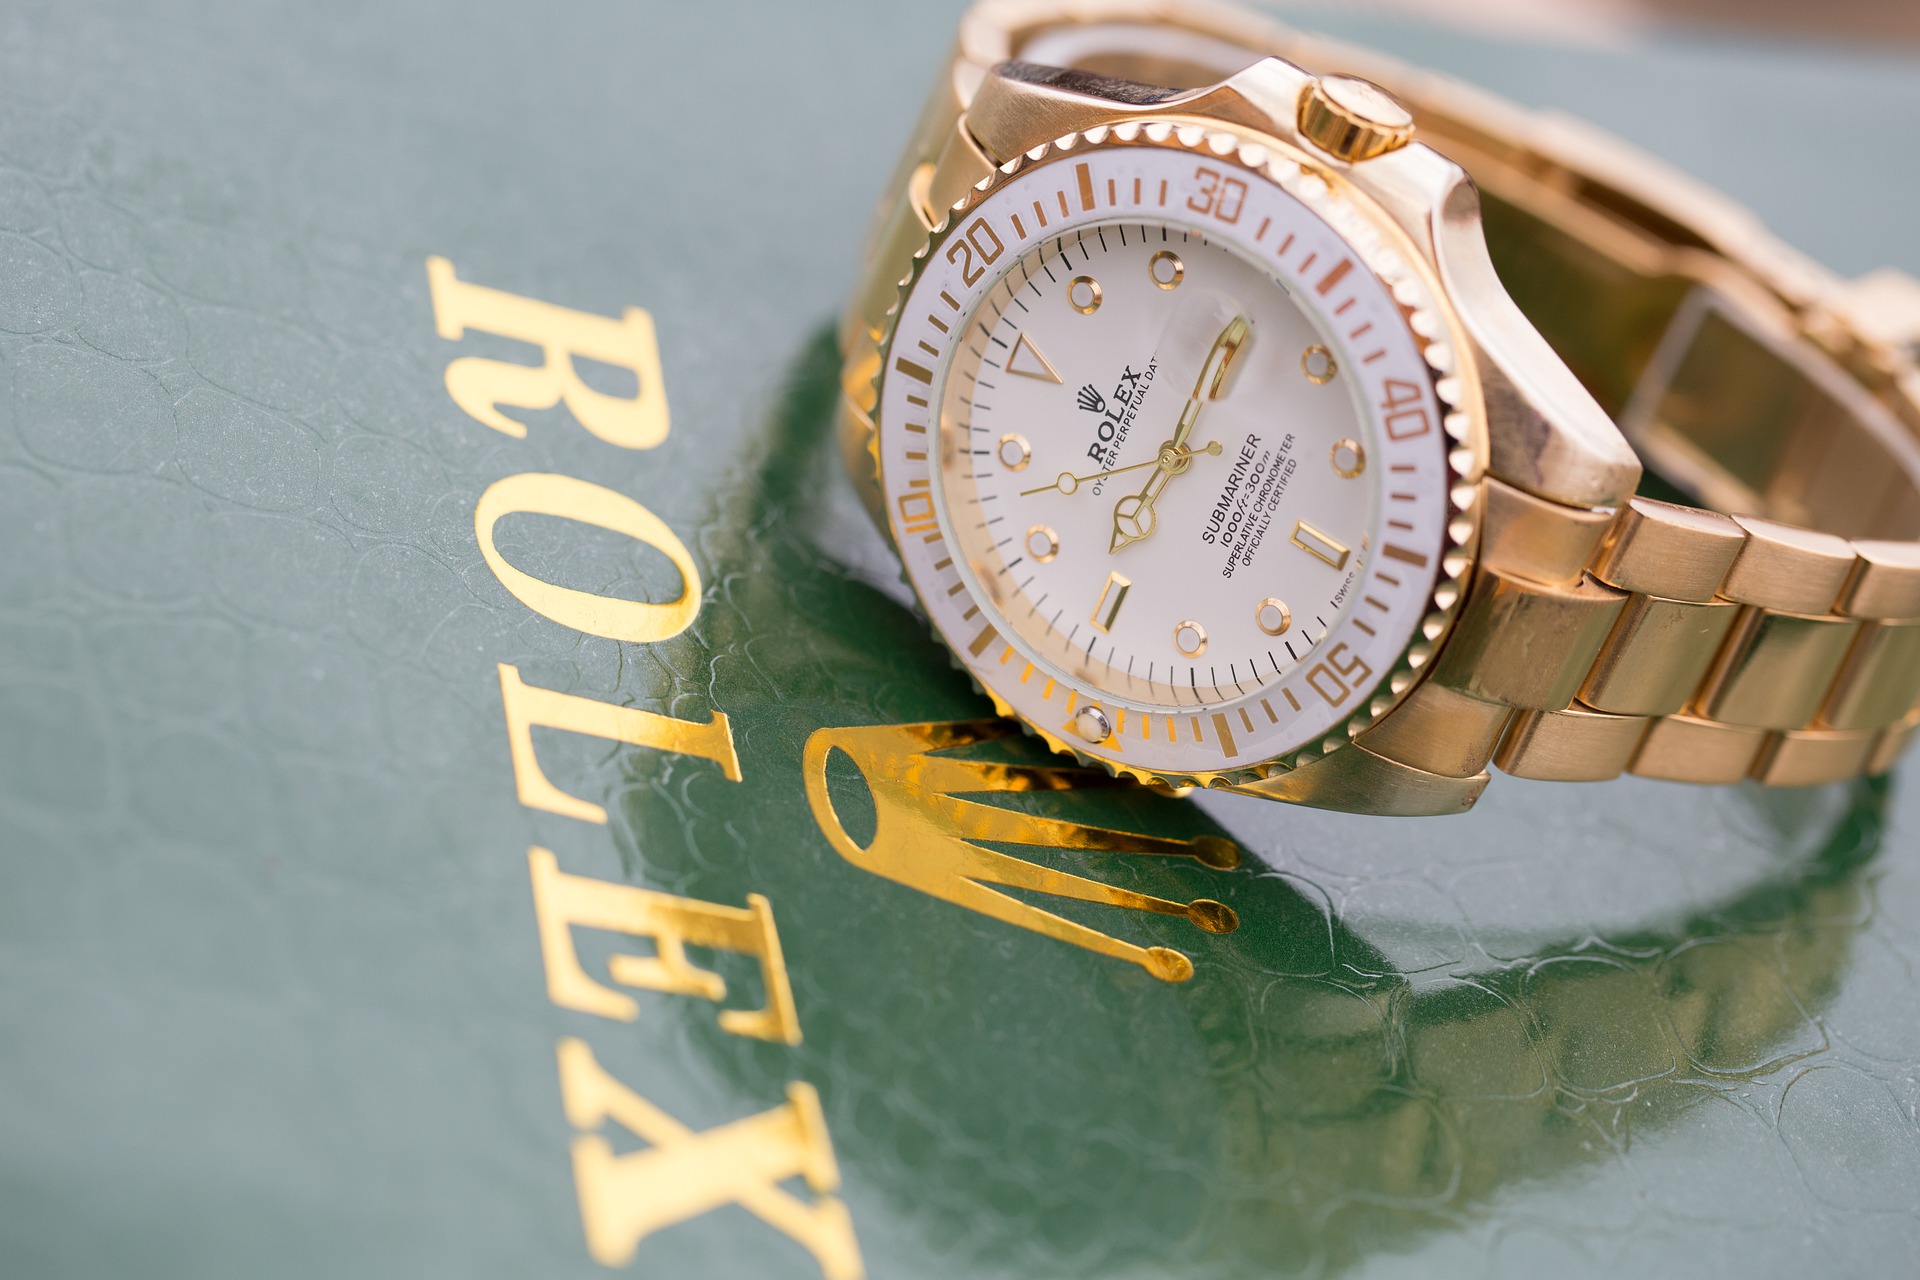 Rolex, une vieille marque à la stratégie marketing toujours d'actualité -  Capital.fr